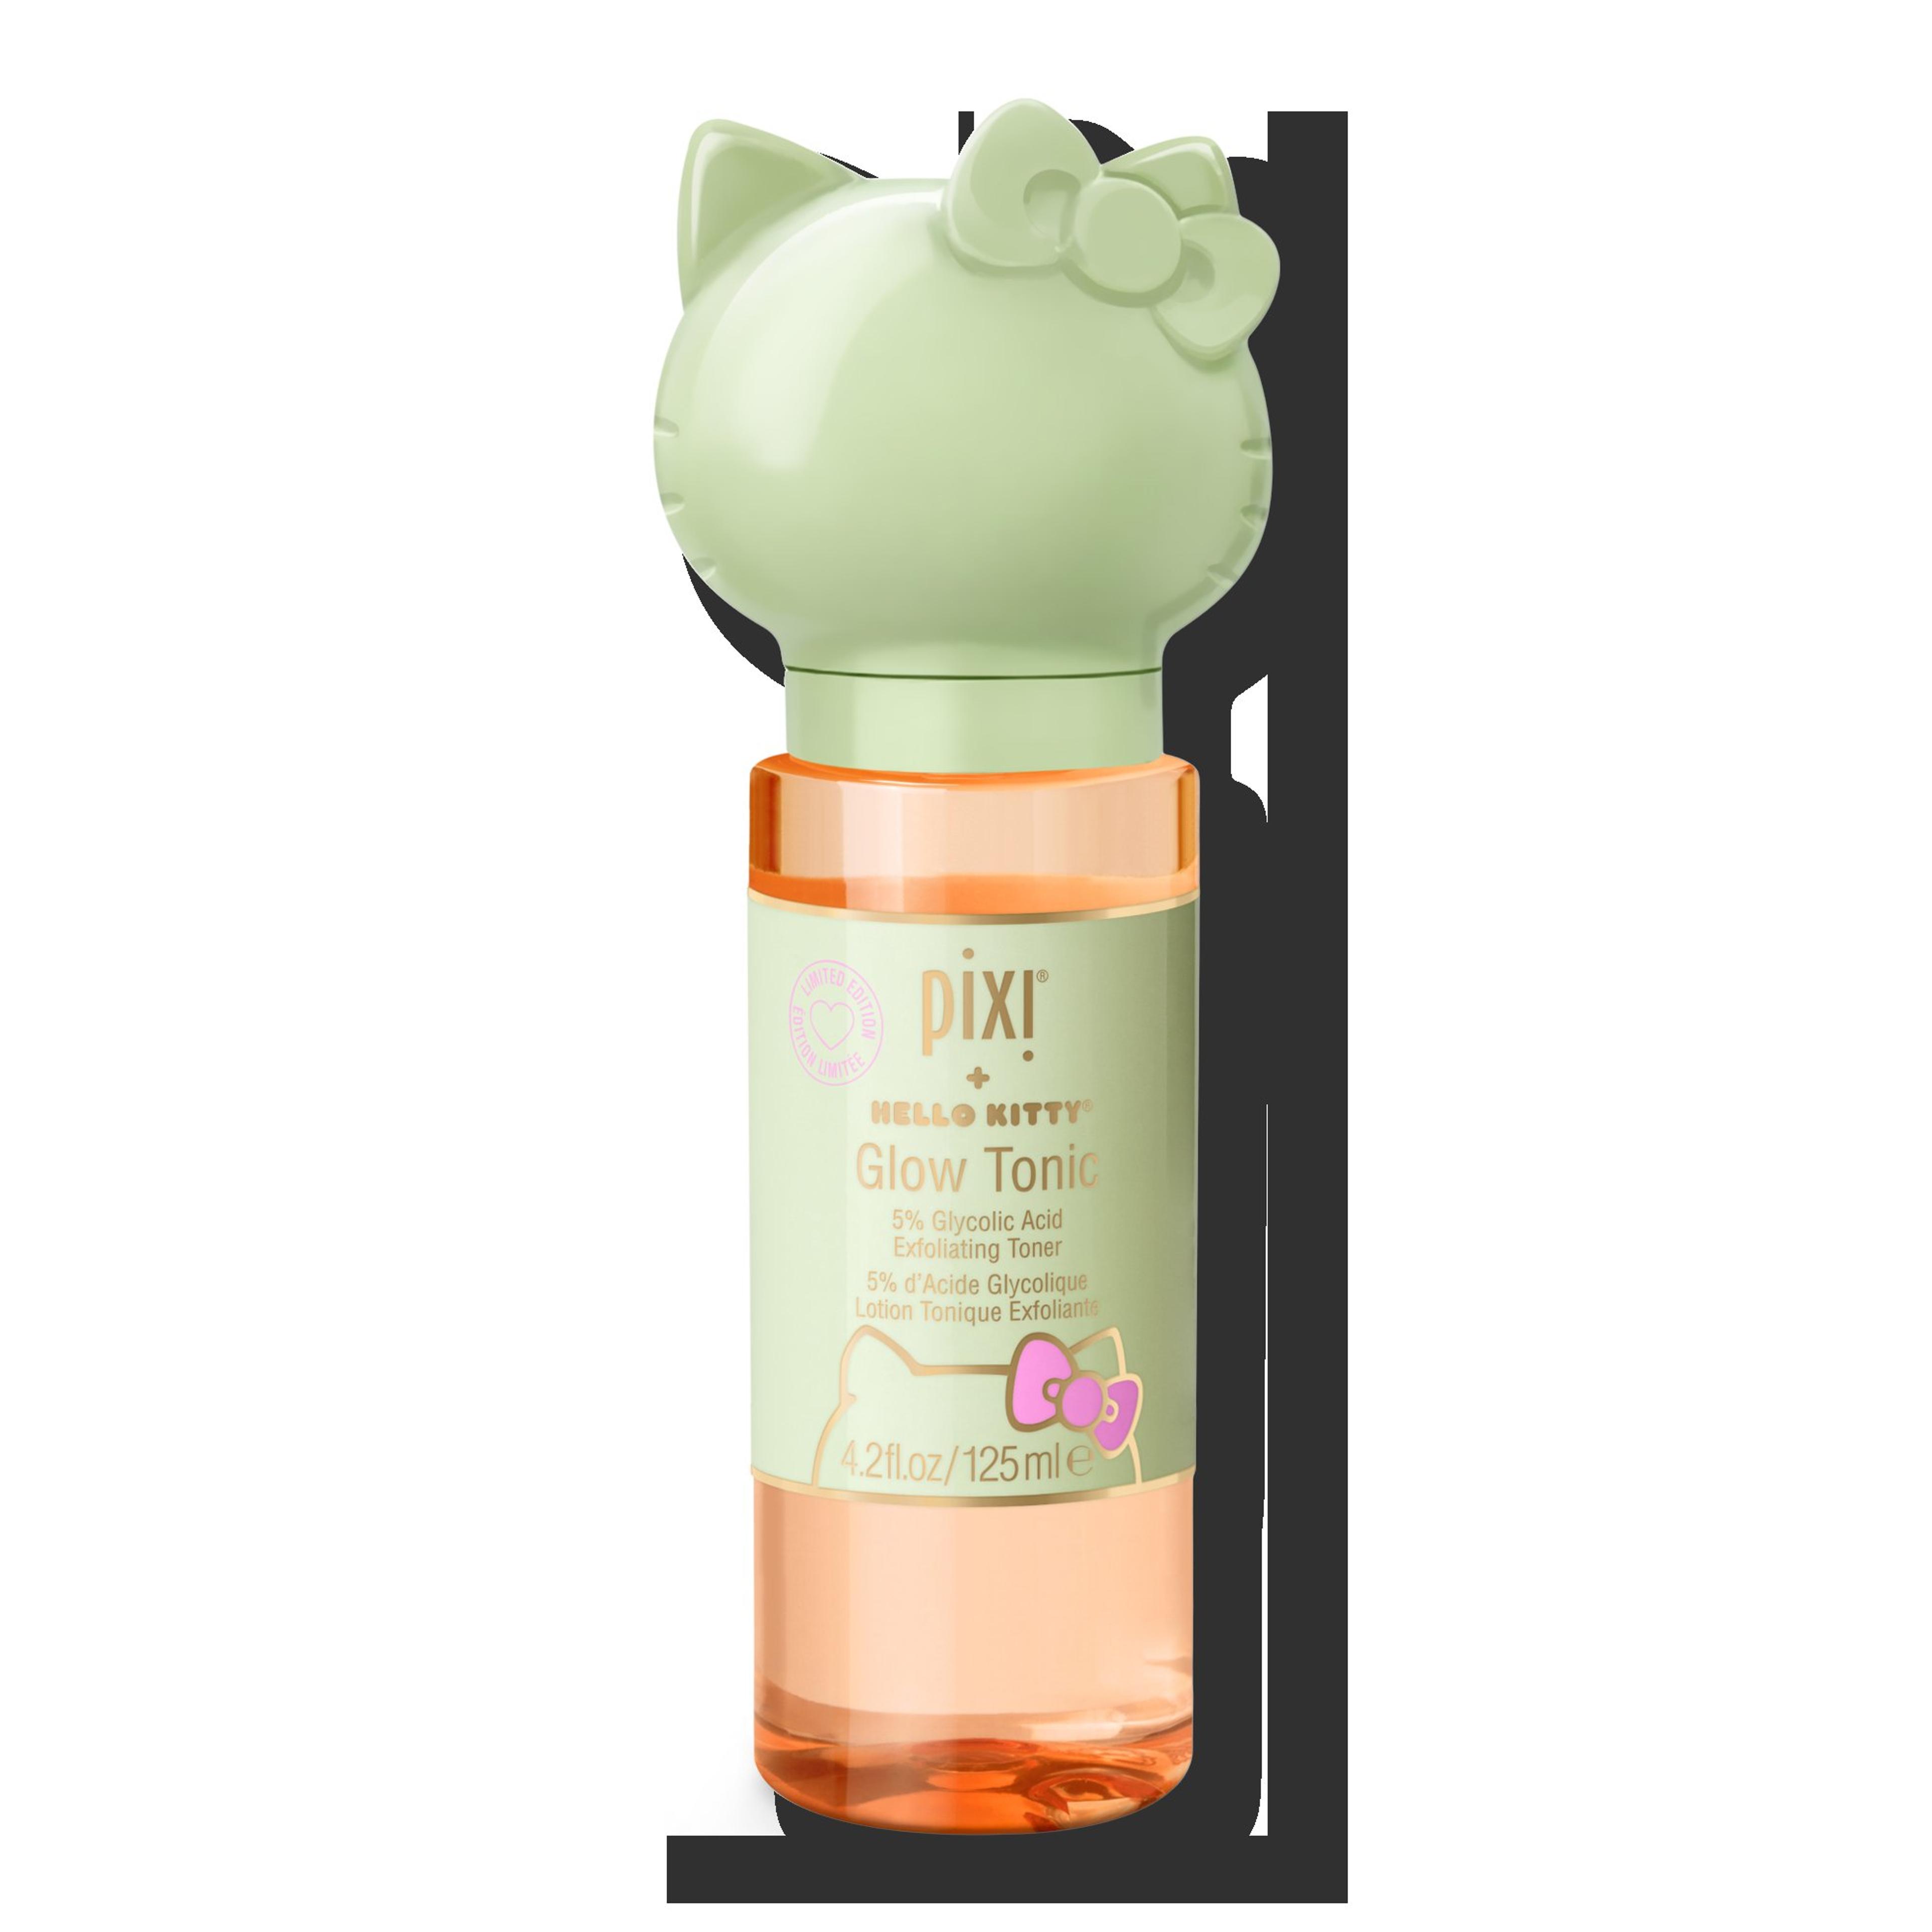 Pixi + Hello Kitty Glow Tonic - Pixi | Ulta Beauty